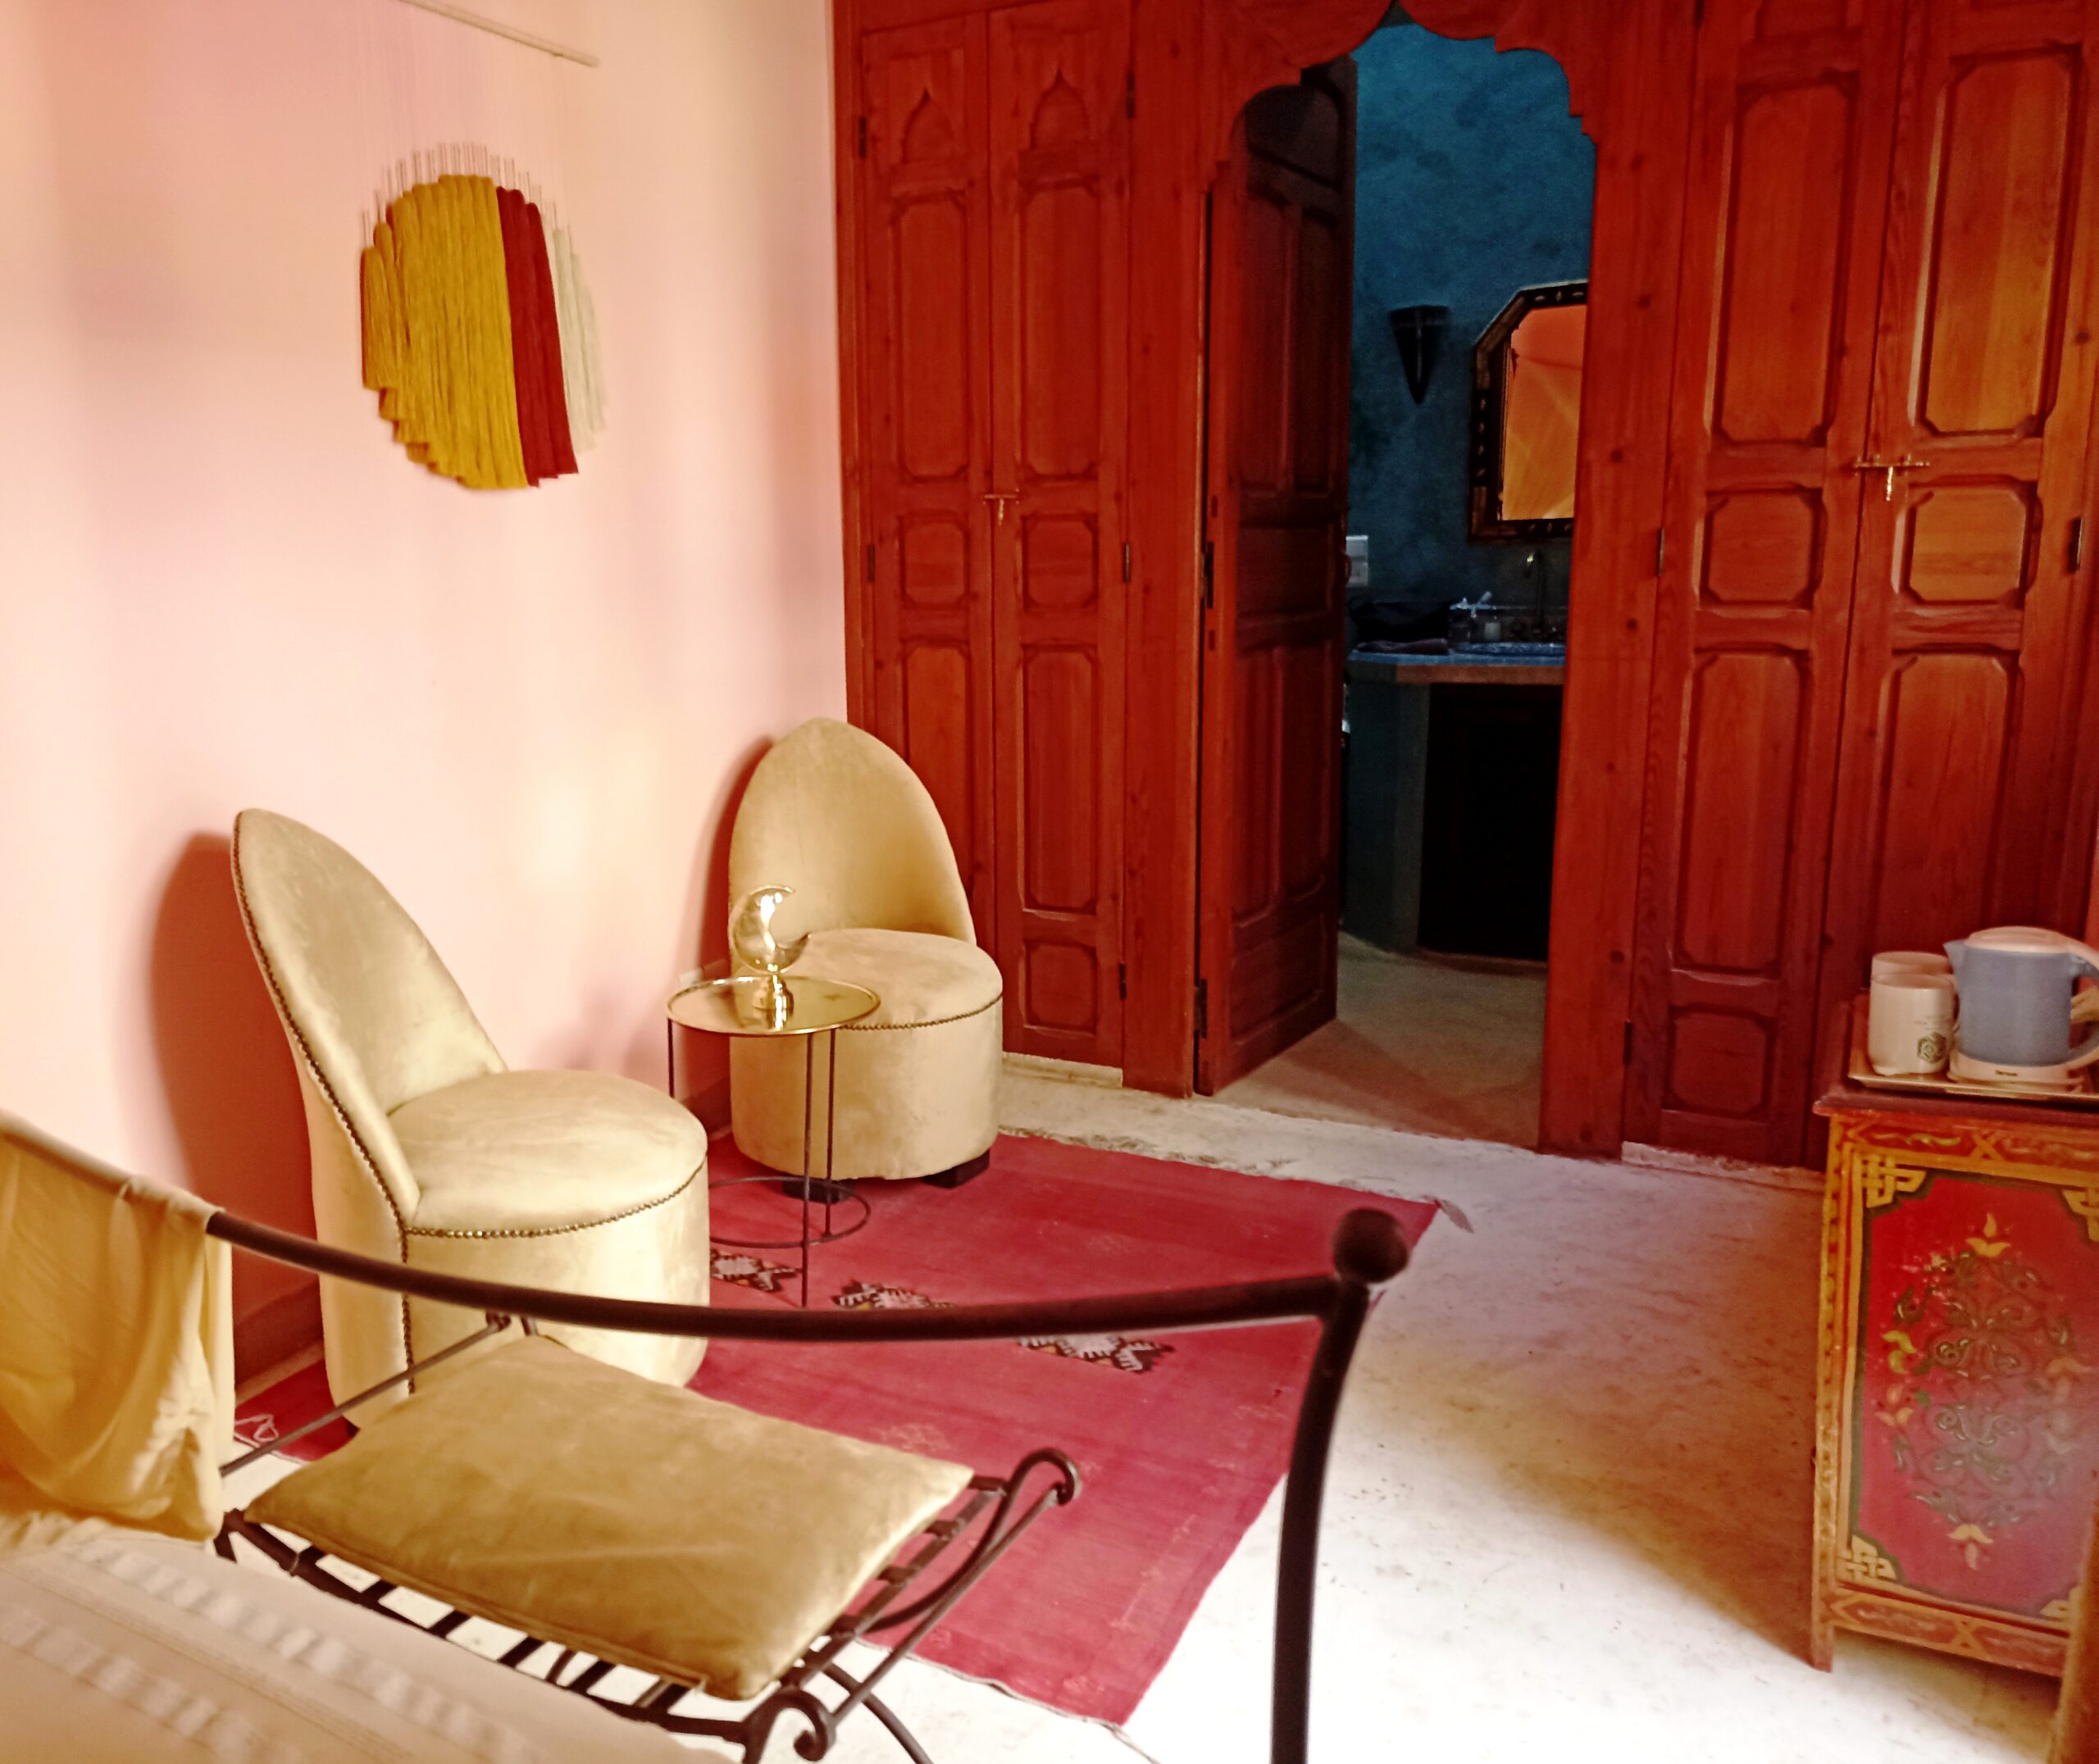 https://www.dartaliwint.com/wp-content/uploads/2023/03/salon-chambre-lune-riad-dar-taliwint-marrakech.jpg